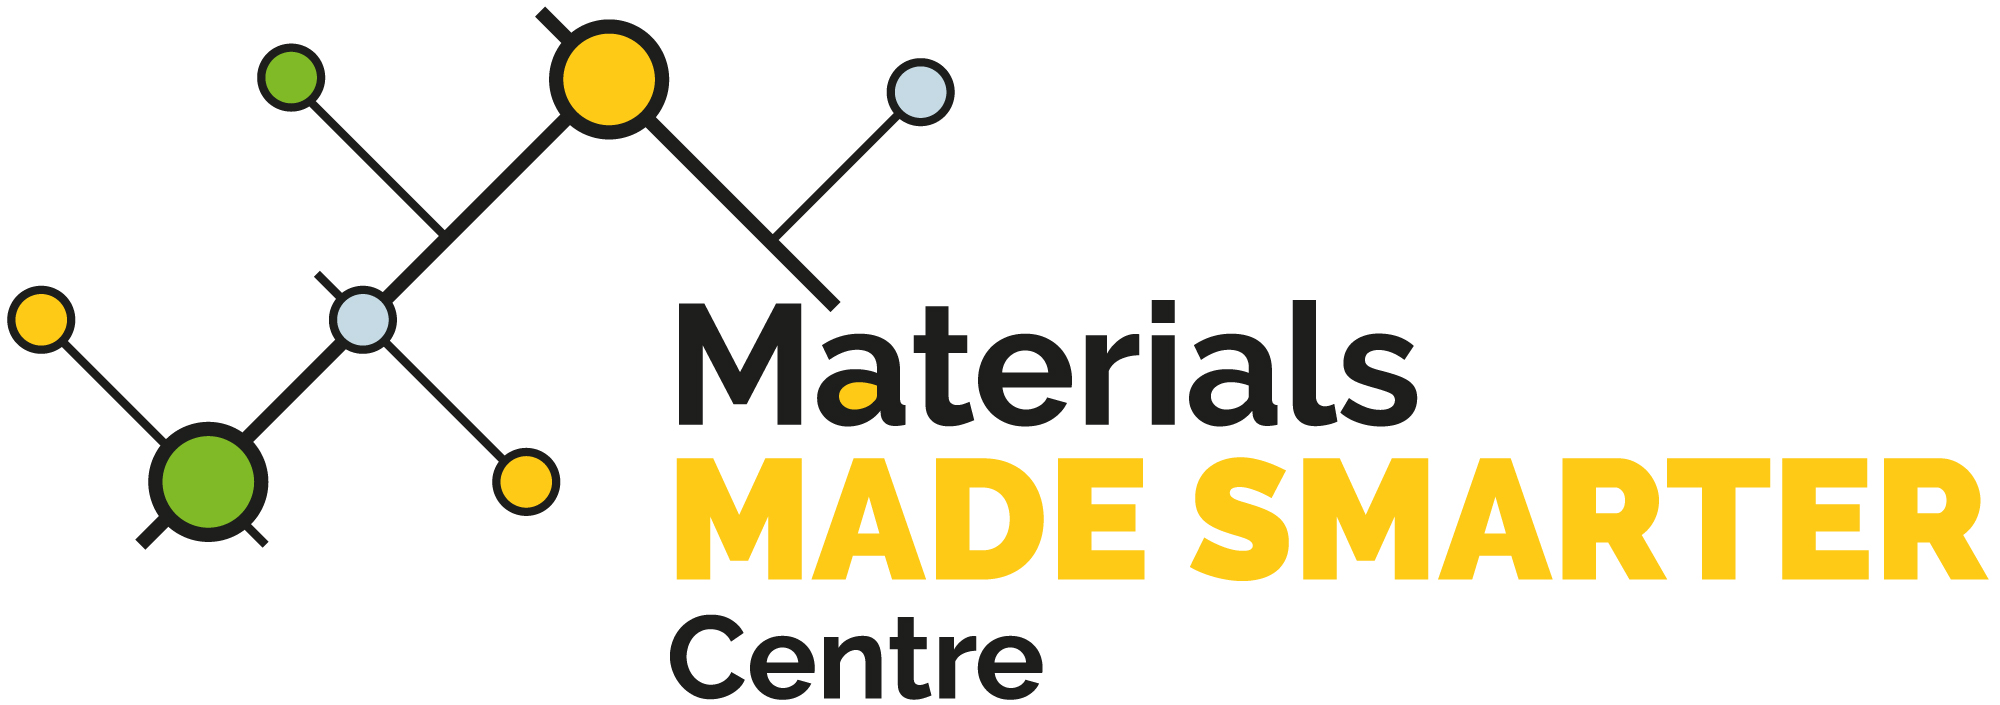 Made Smarter Innovation Webinar Series: Materials Made Smarter Centre